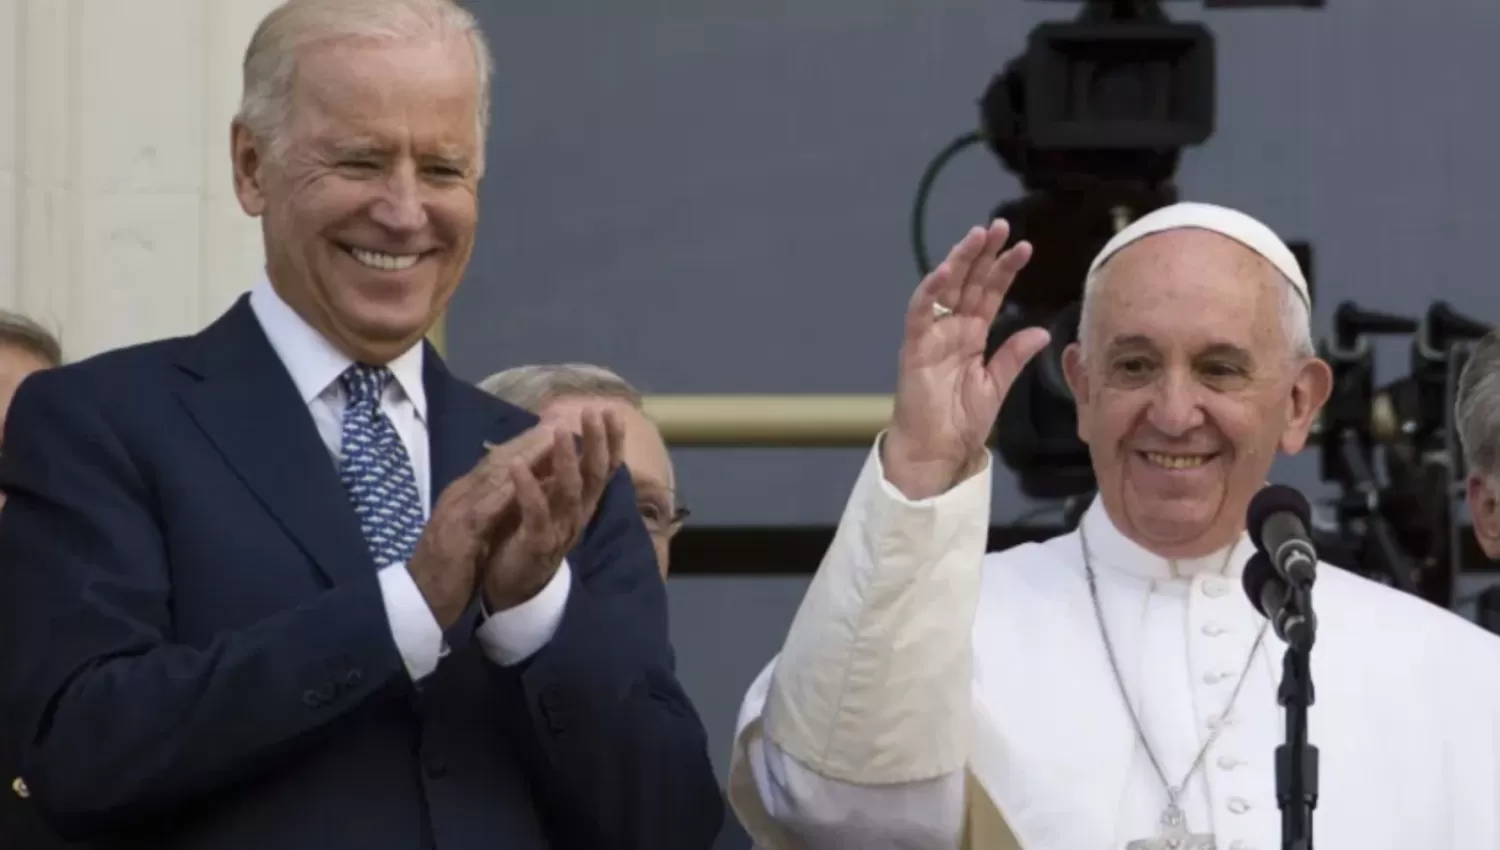 ADMIRACIÓN. Biden es devoto católico y visitó a Francisco antes de las elecciones que lo convirtieron en presidente de Estados Unidos.